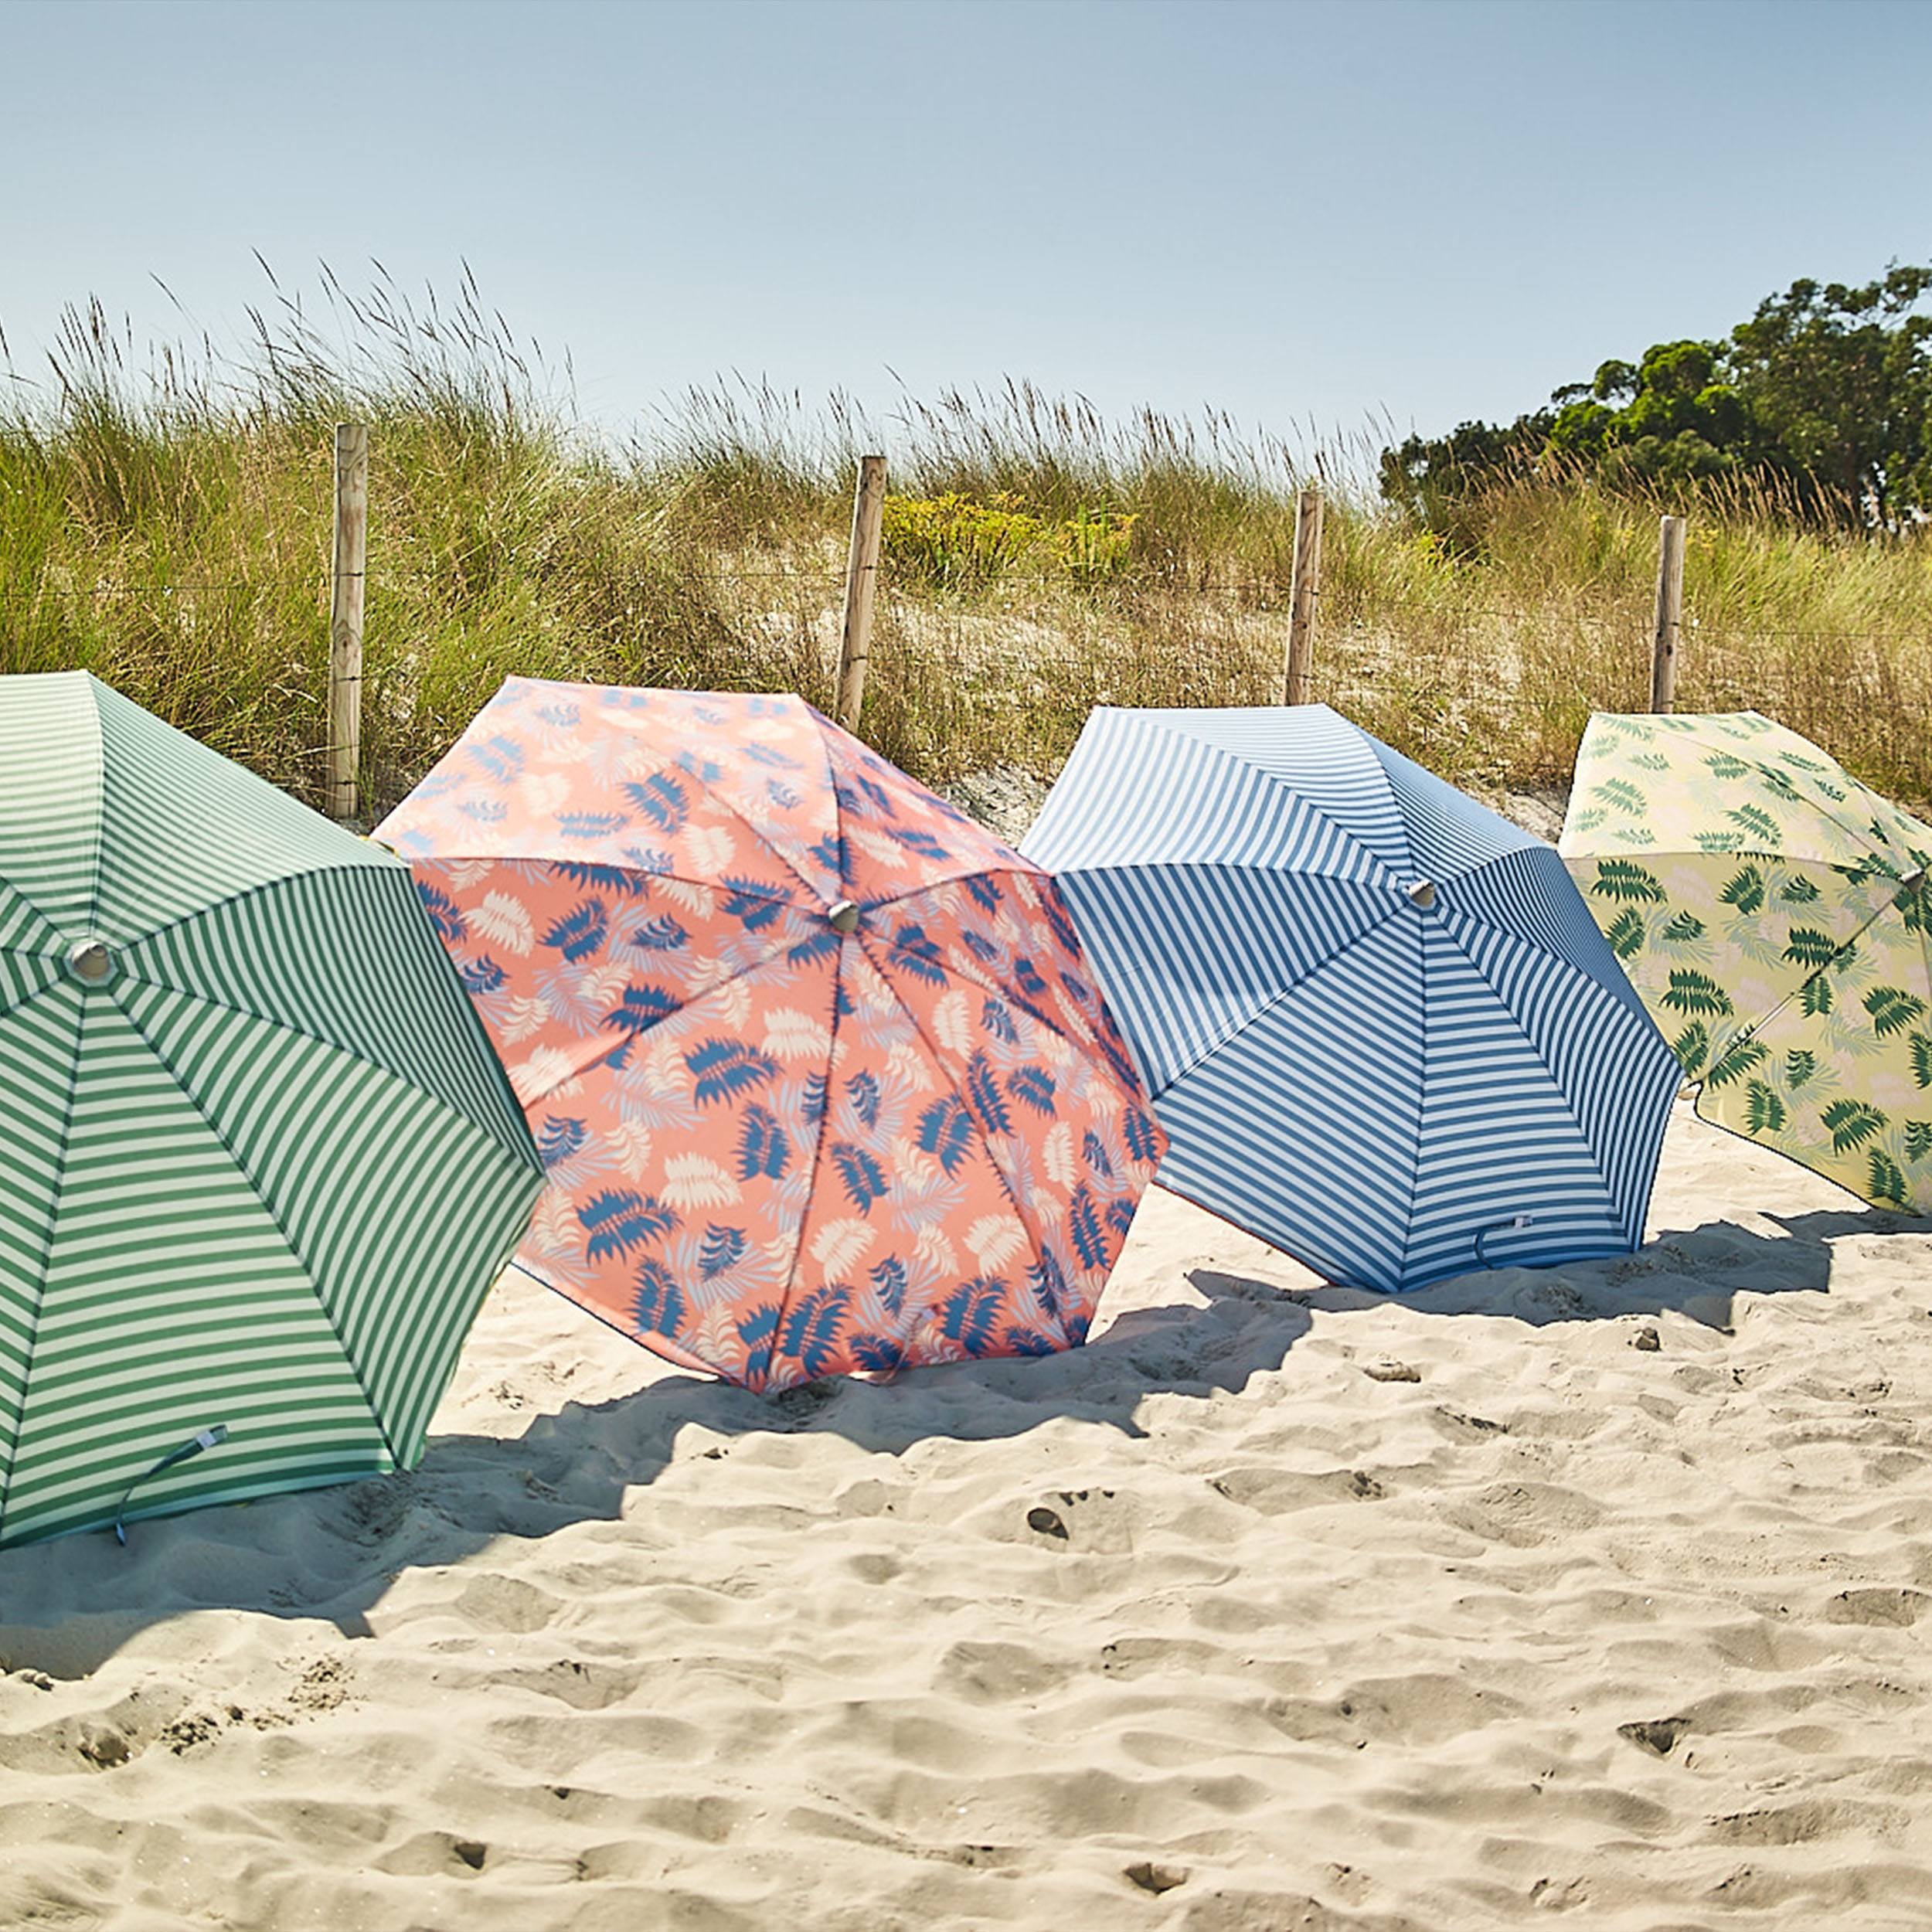 Beach Sonnenschirm mit Knickgelenk ohne Schirmständer